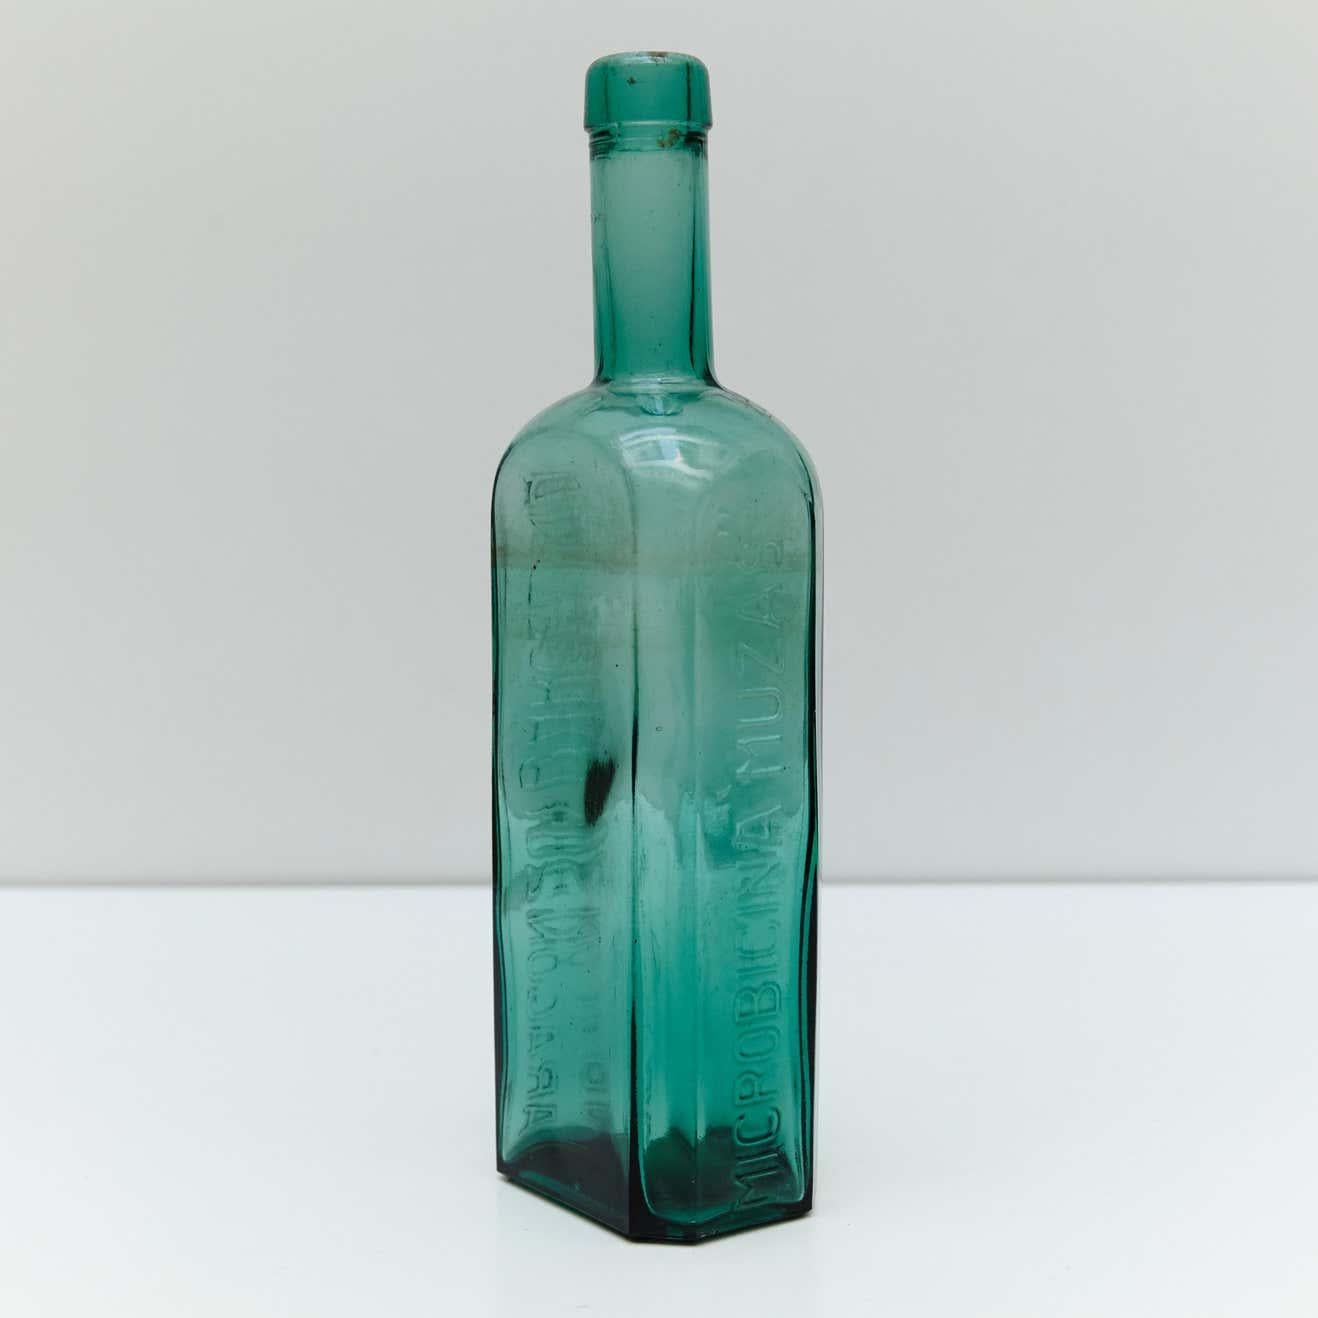 Spanish Pharmacy Glass Bottles Set from Barcelona, circa 1920 For Sale